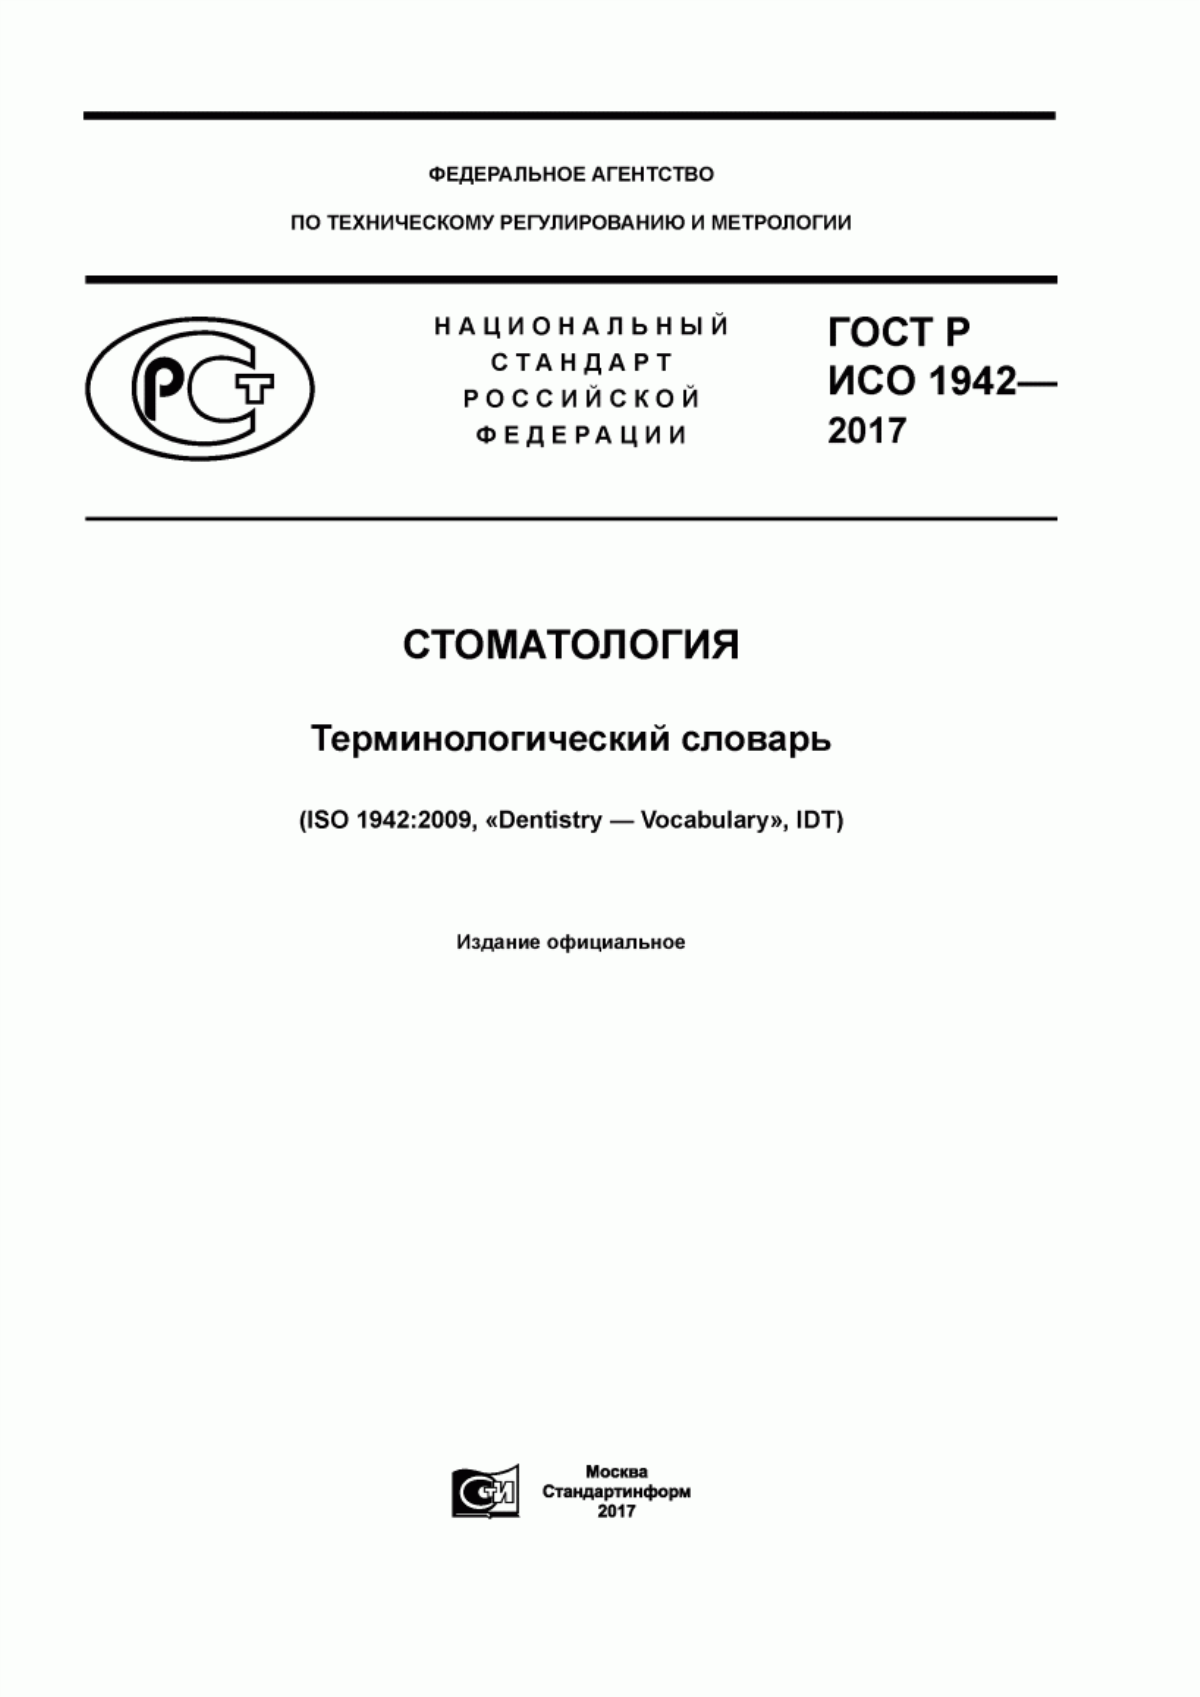 ГОСТ Р ИСО 1942-2017 Стоматология. Терминологический словарь